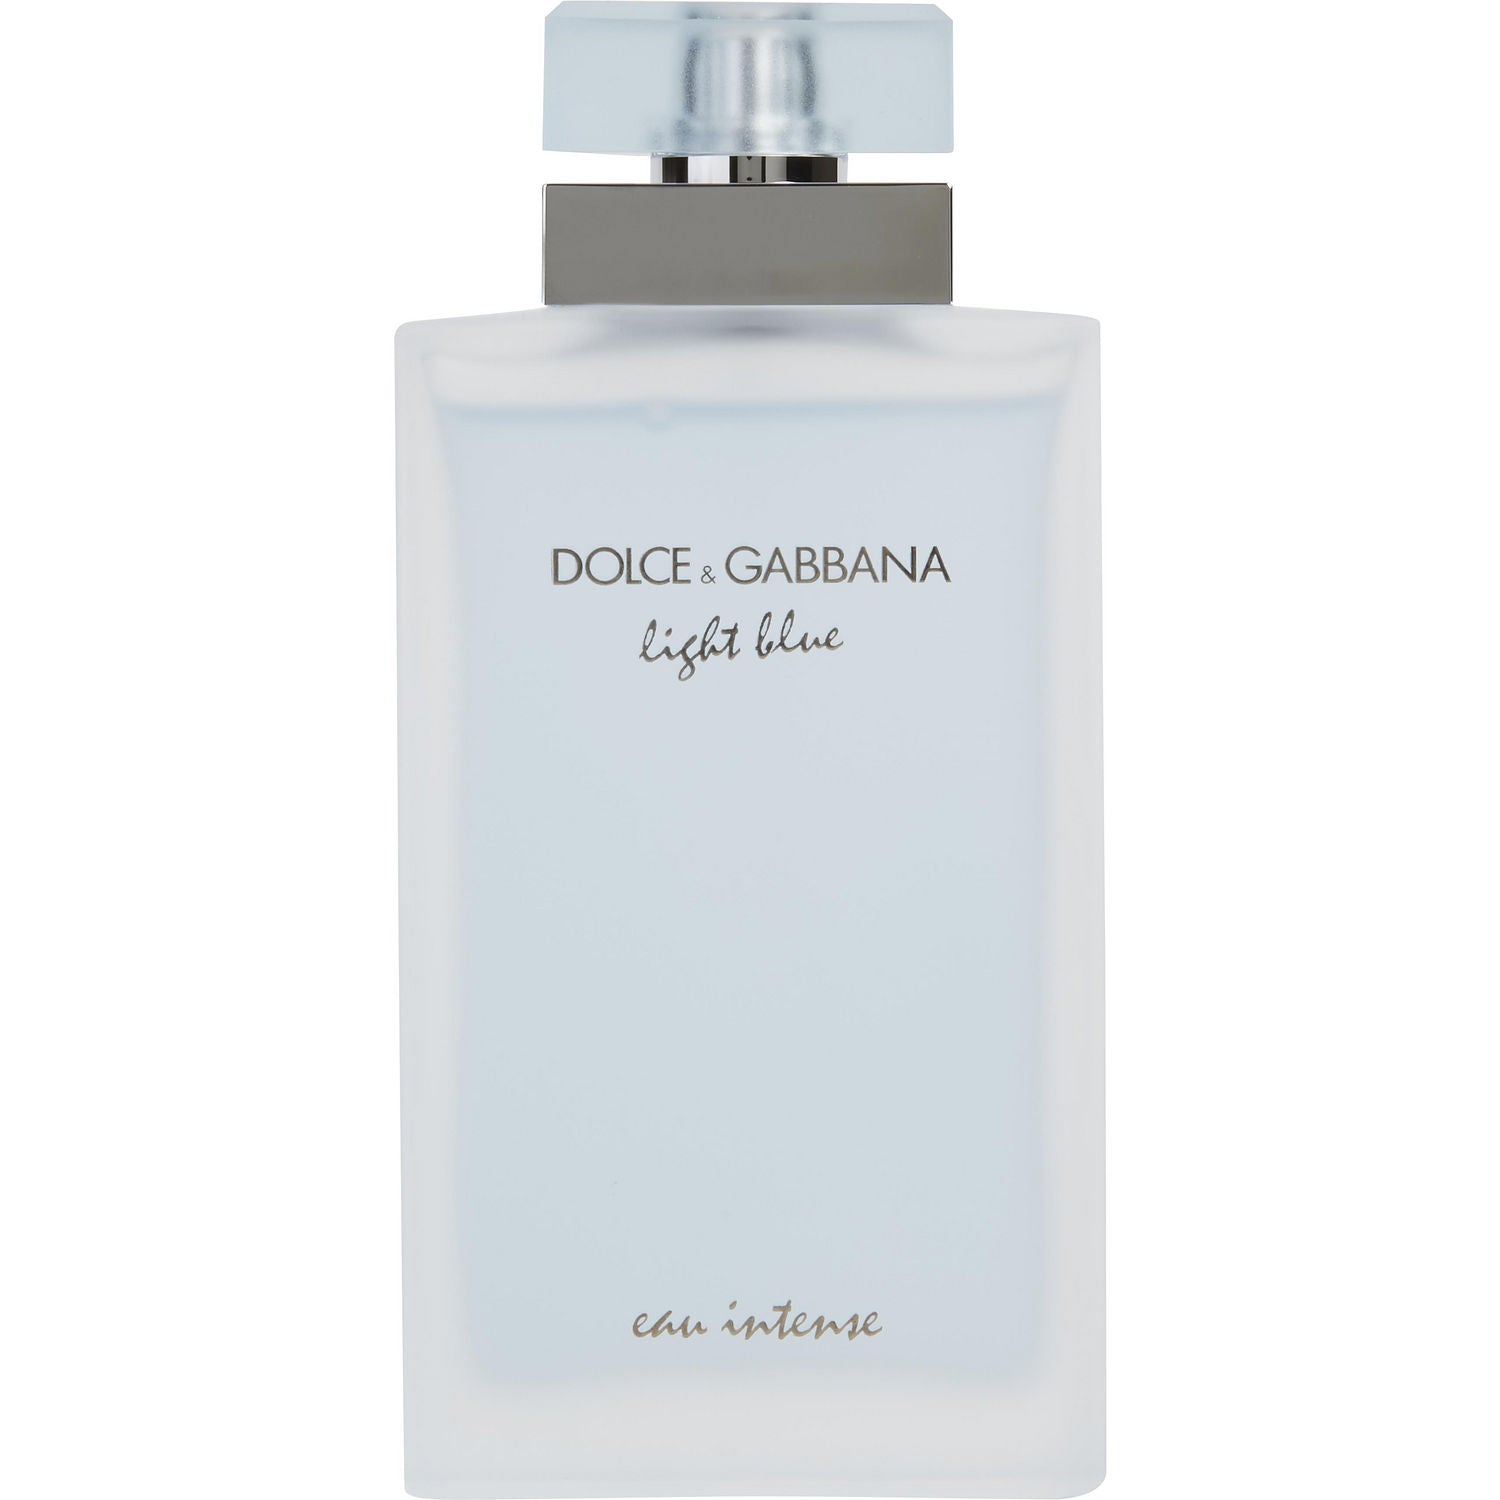 Dolce & Gabbana Light Blue Medium Canvas Duffle Bag 20" x 10"  NWOT